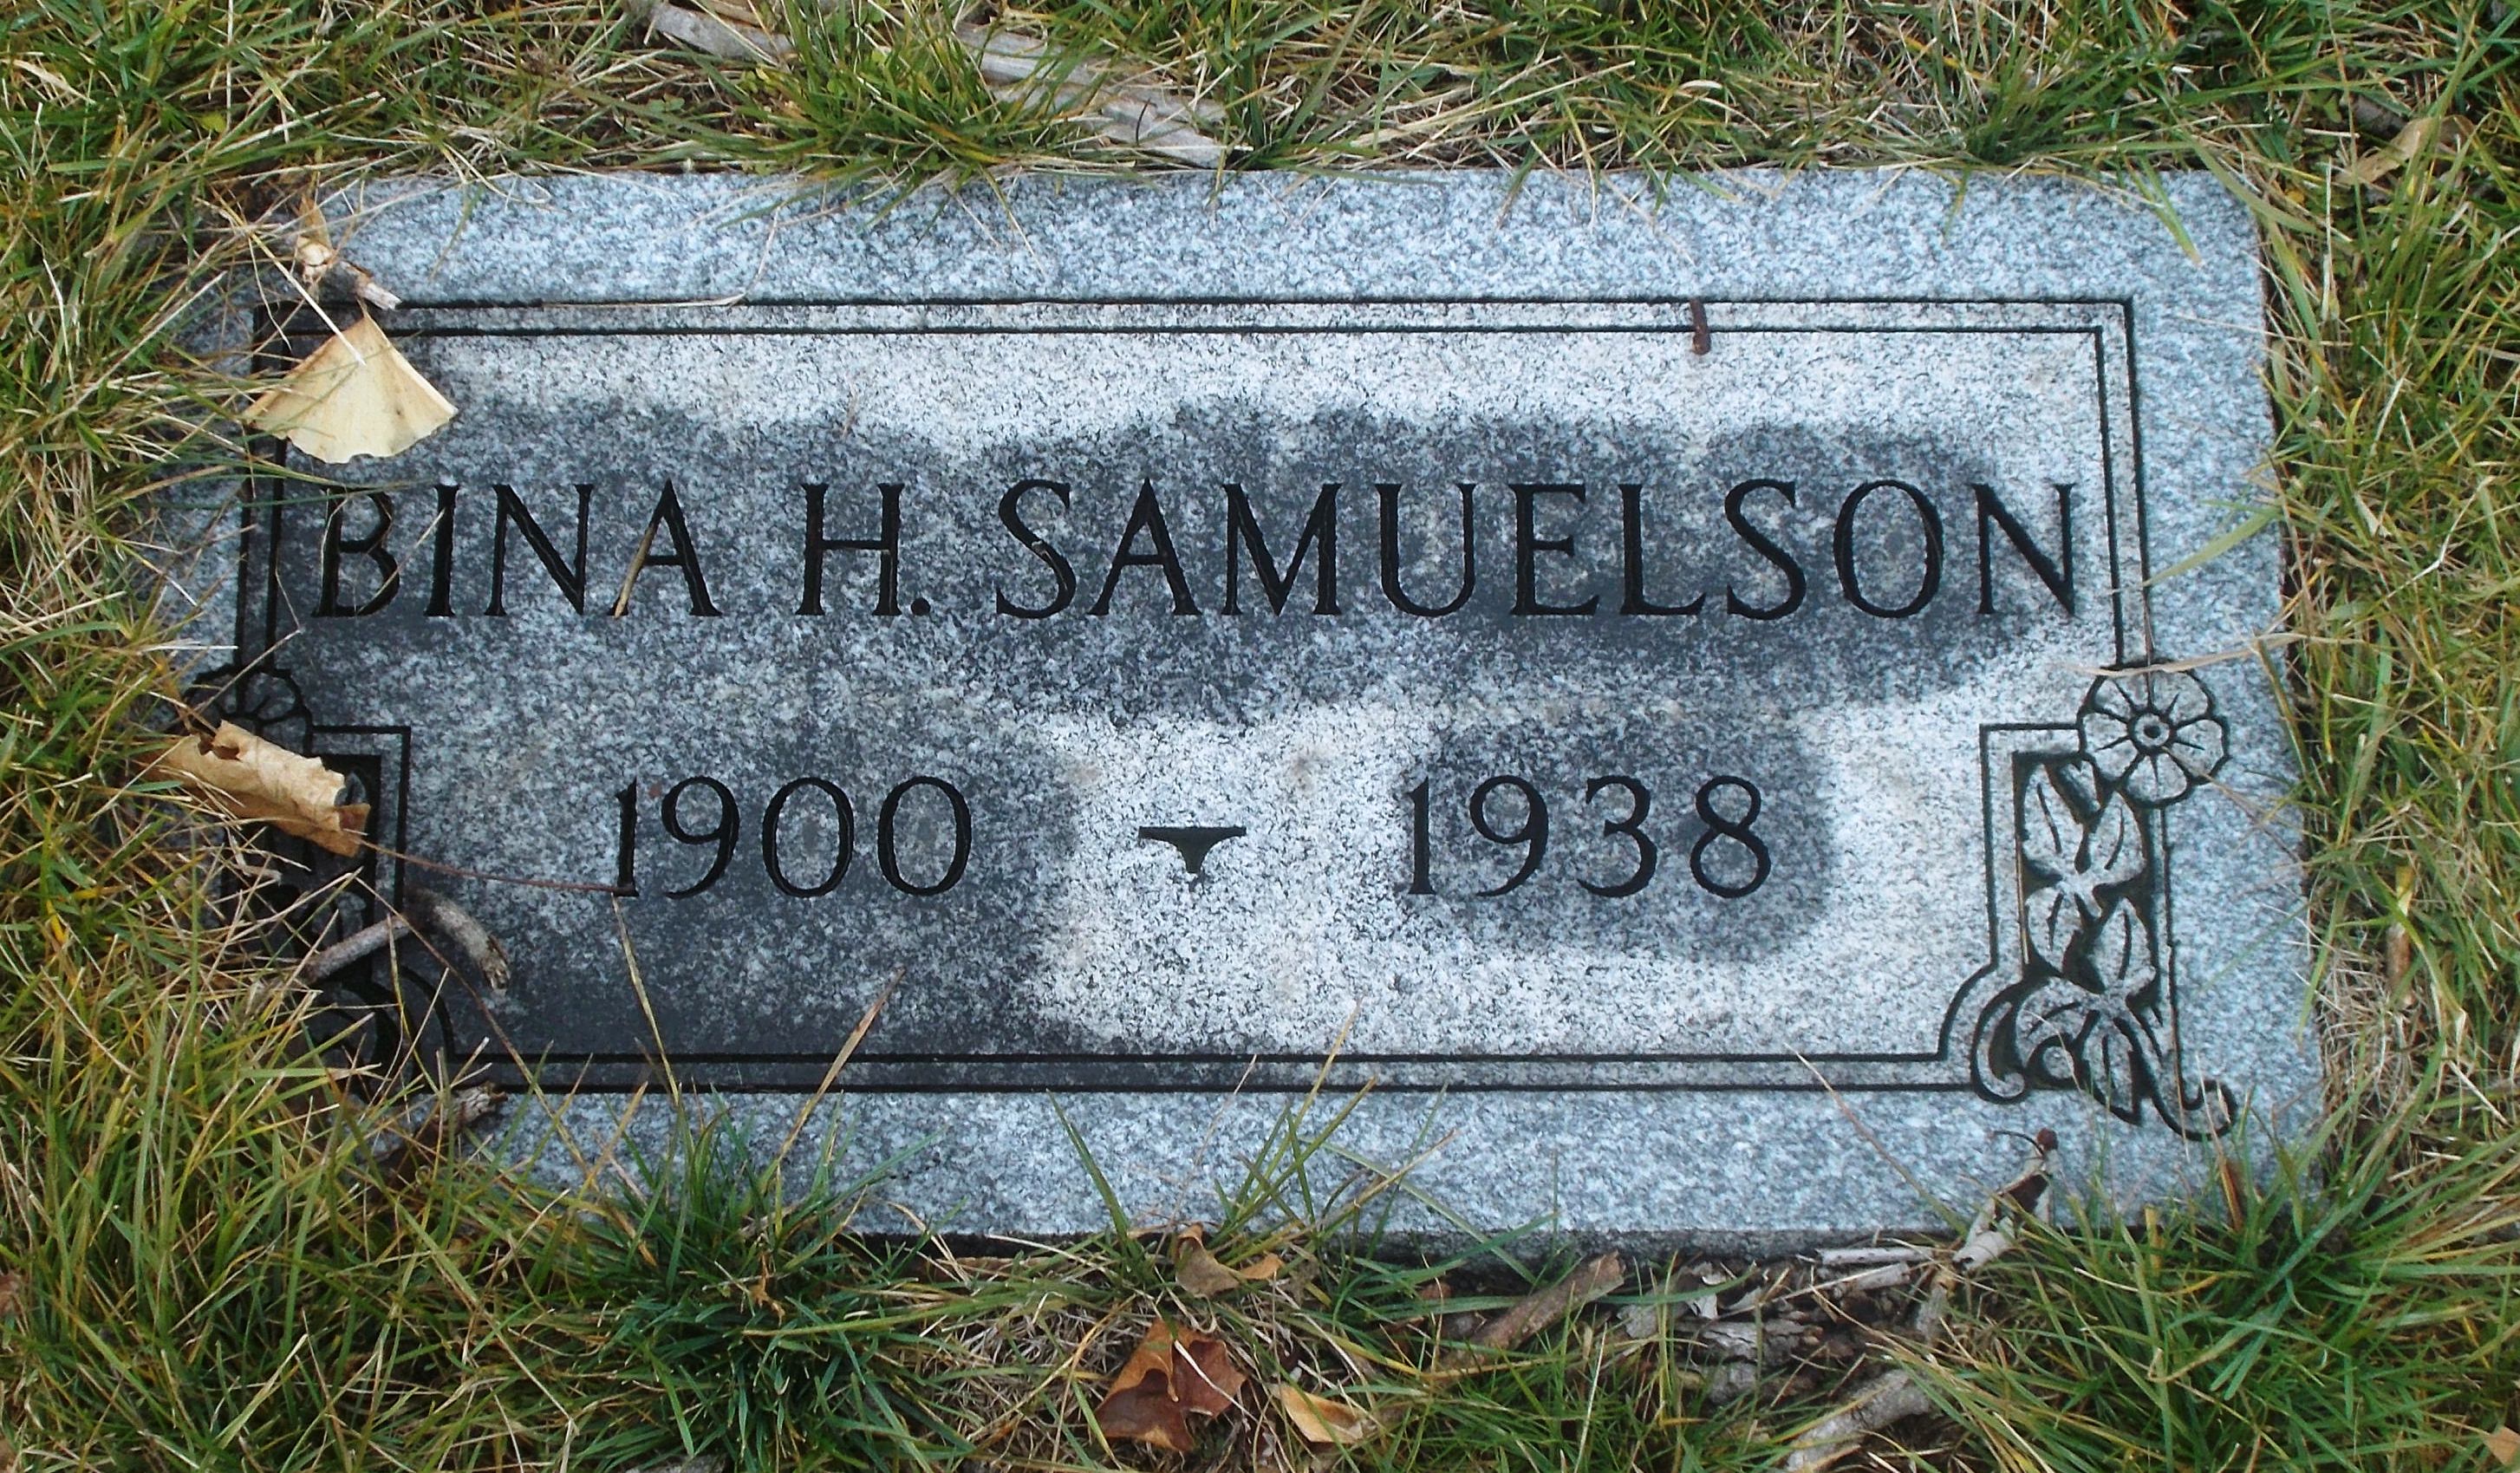 Bina H Samuelson